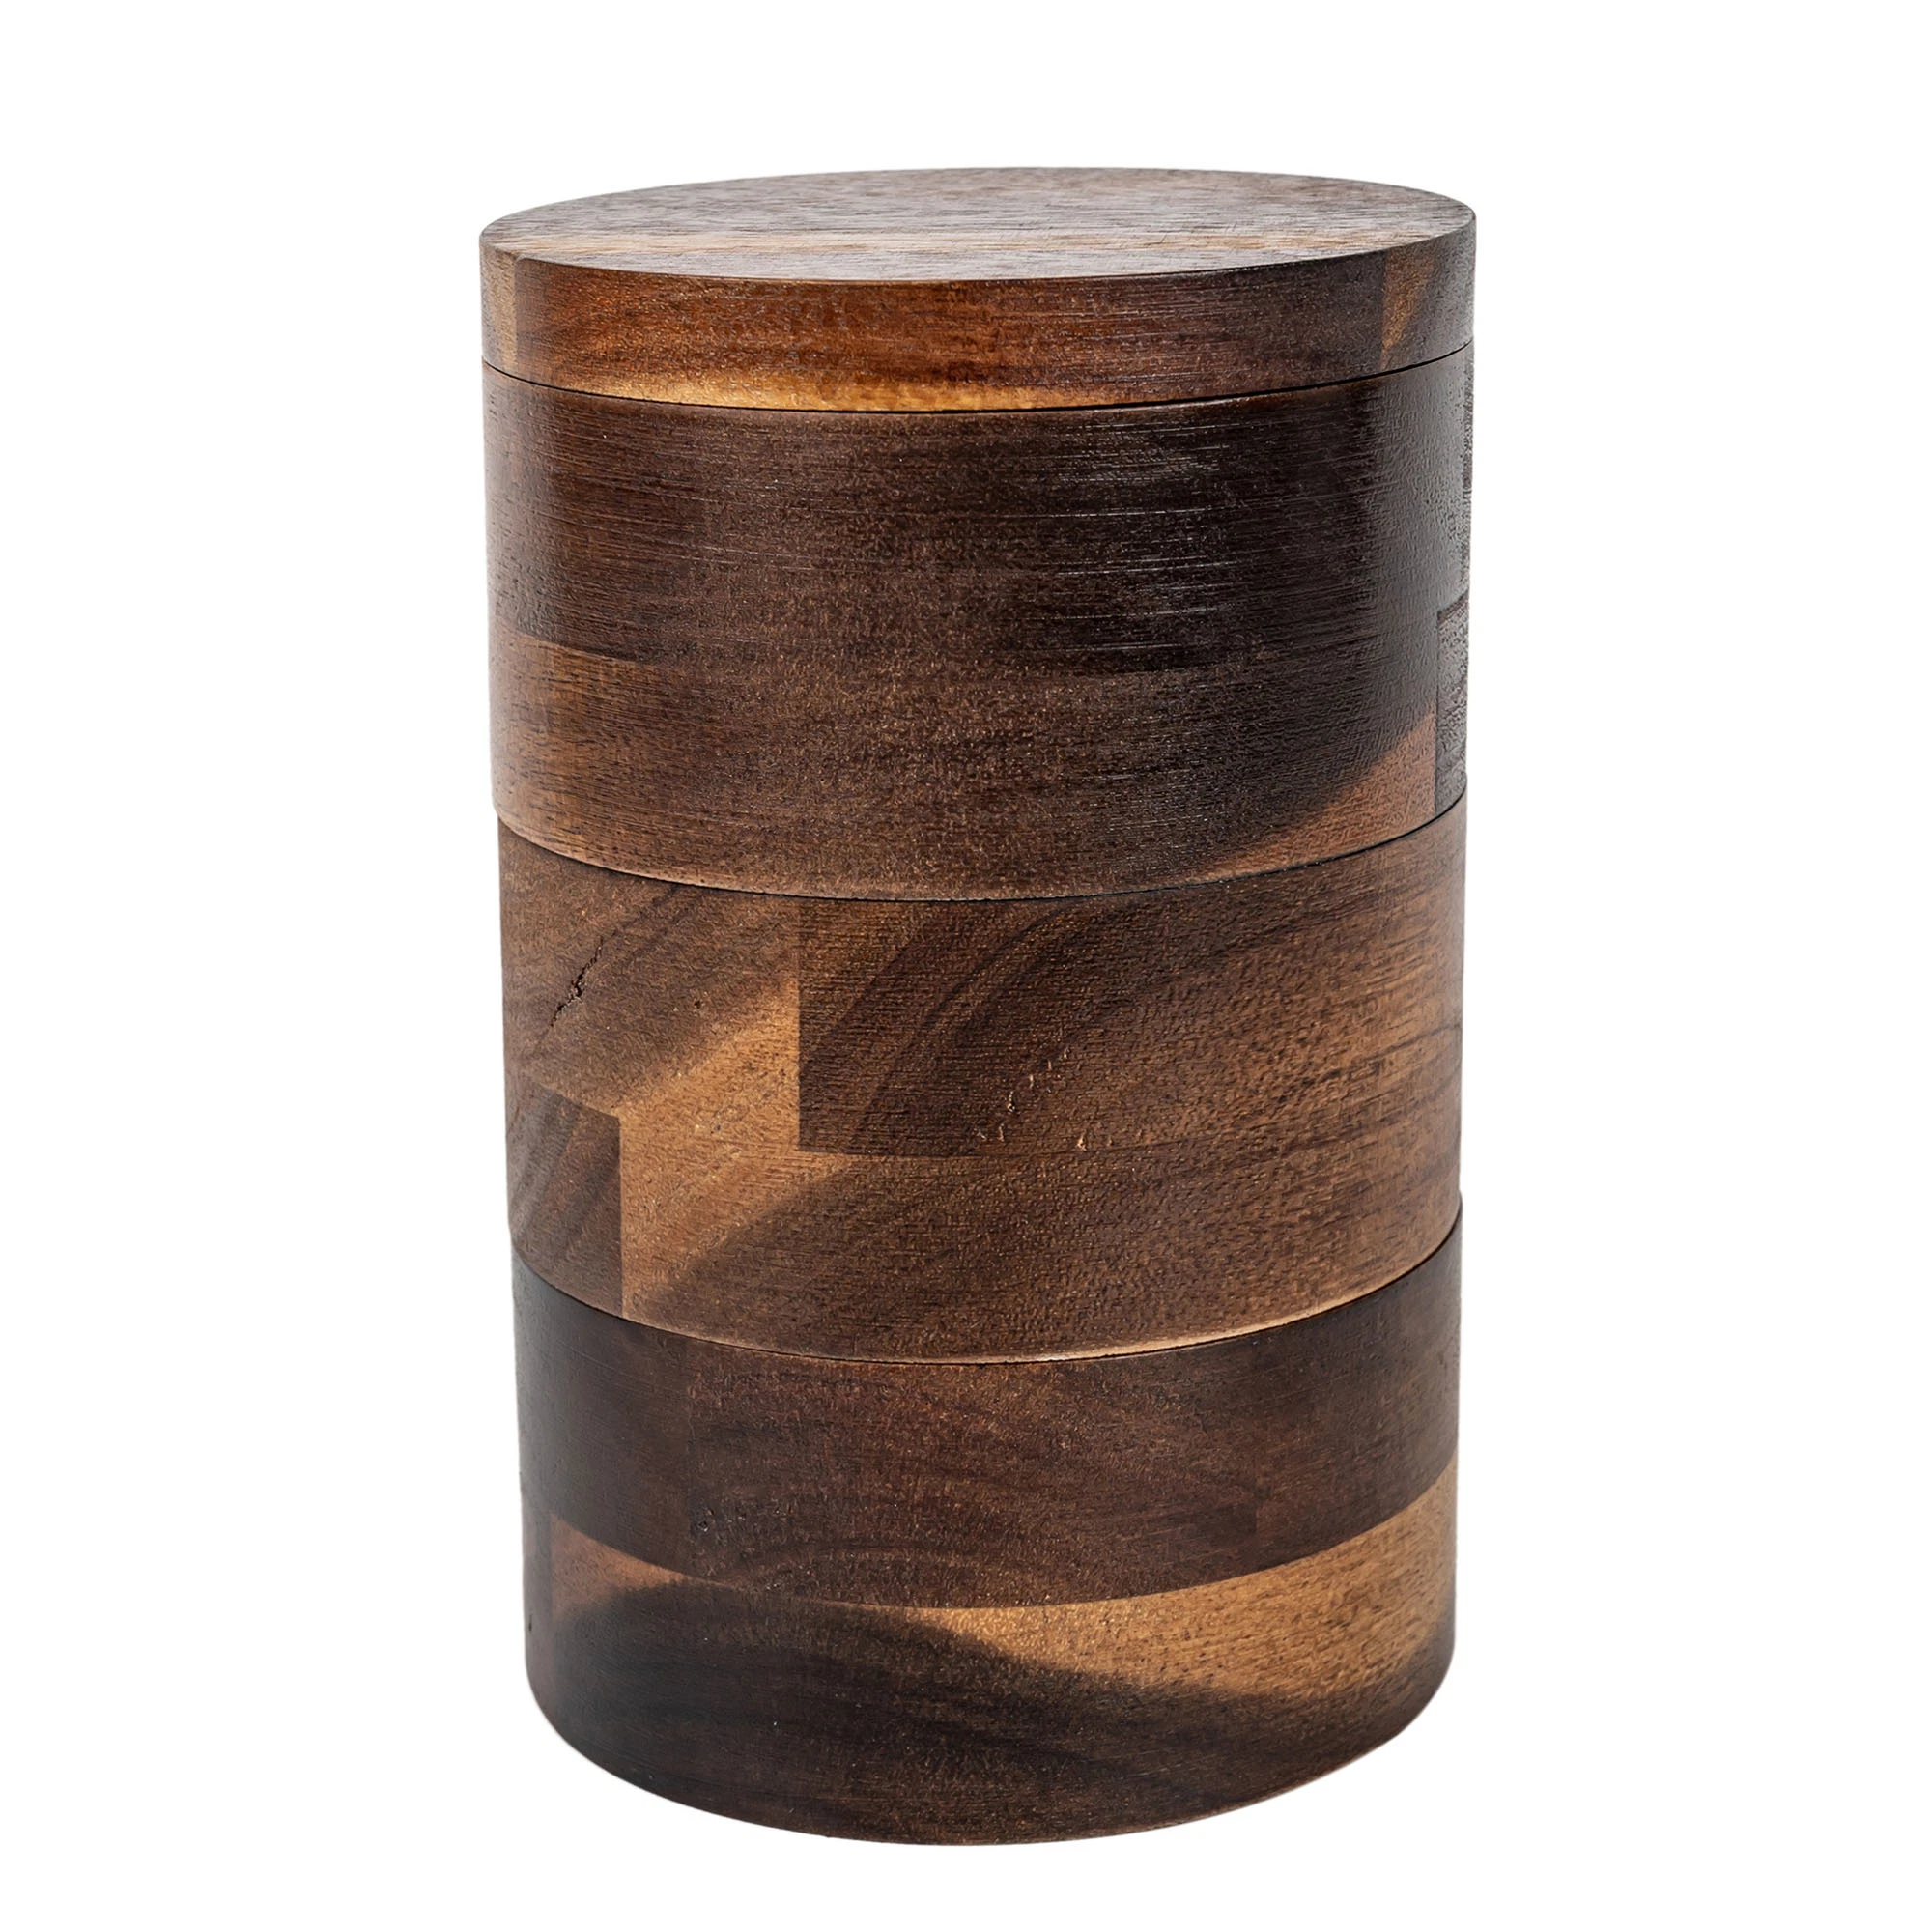 3-Tier Bambus Holz Stapeln Salz Box Container Sichere dauerhafte Lagerung &amp; Organisation - Gewürze, Gewürze, Kräuter oder kleine Artikel